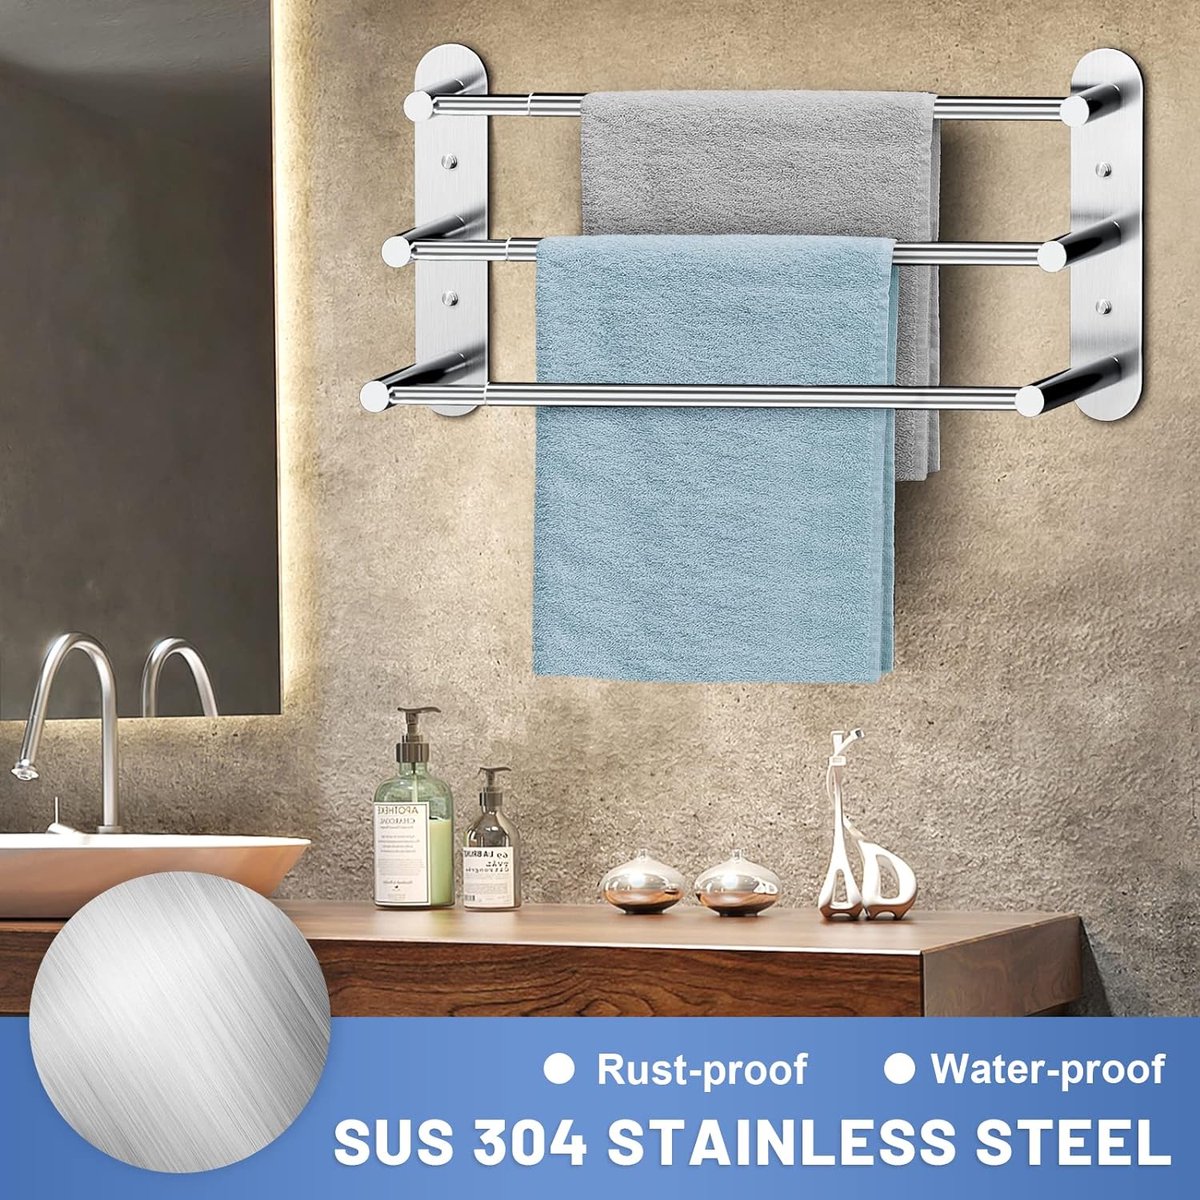 Handdoekhouder zonder boren - handdoekhouder badkamer uittrekbaar 37-70 cm - roestvrij staal handdoekstang muur wandrek voor badkamer keuken - 2 installatiemethoden, zilver